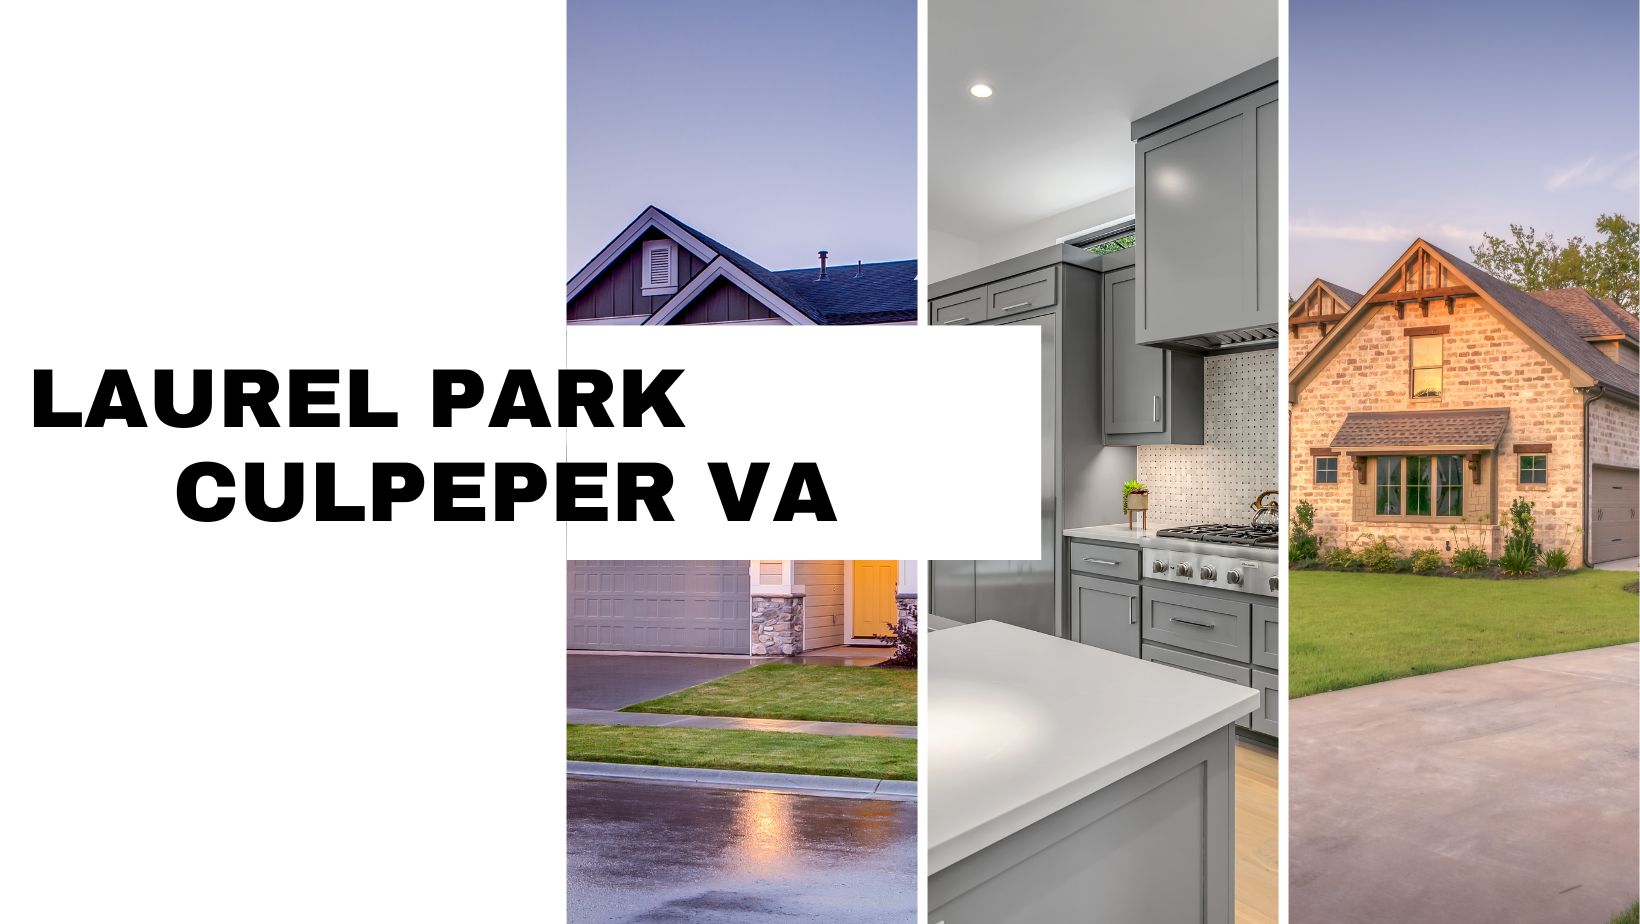 Laurel Park Culpeper VA Homes for Sale